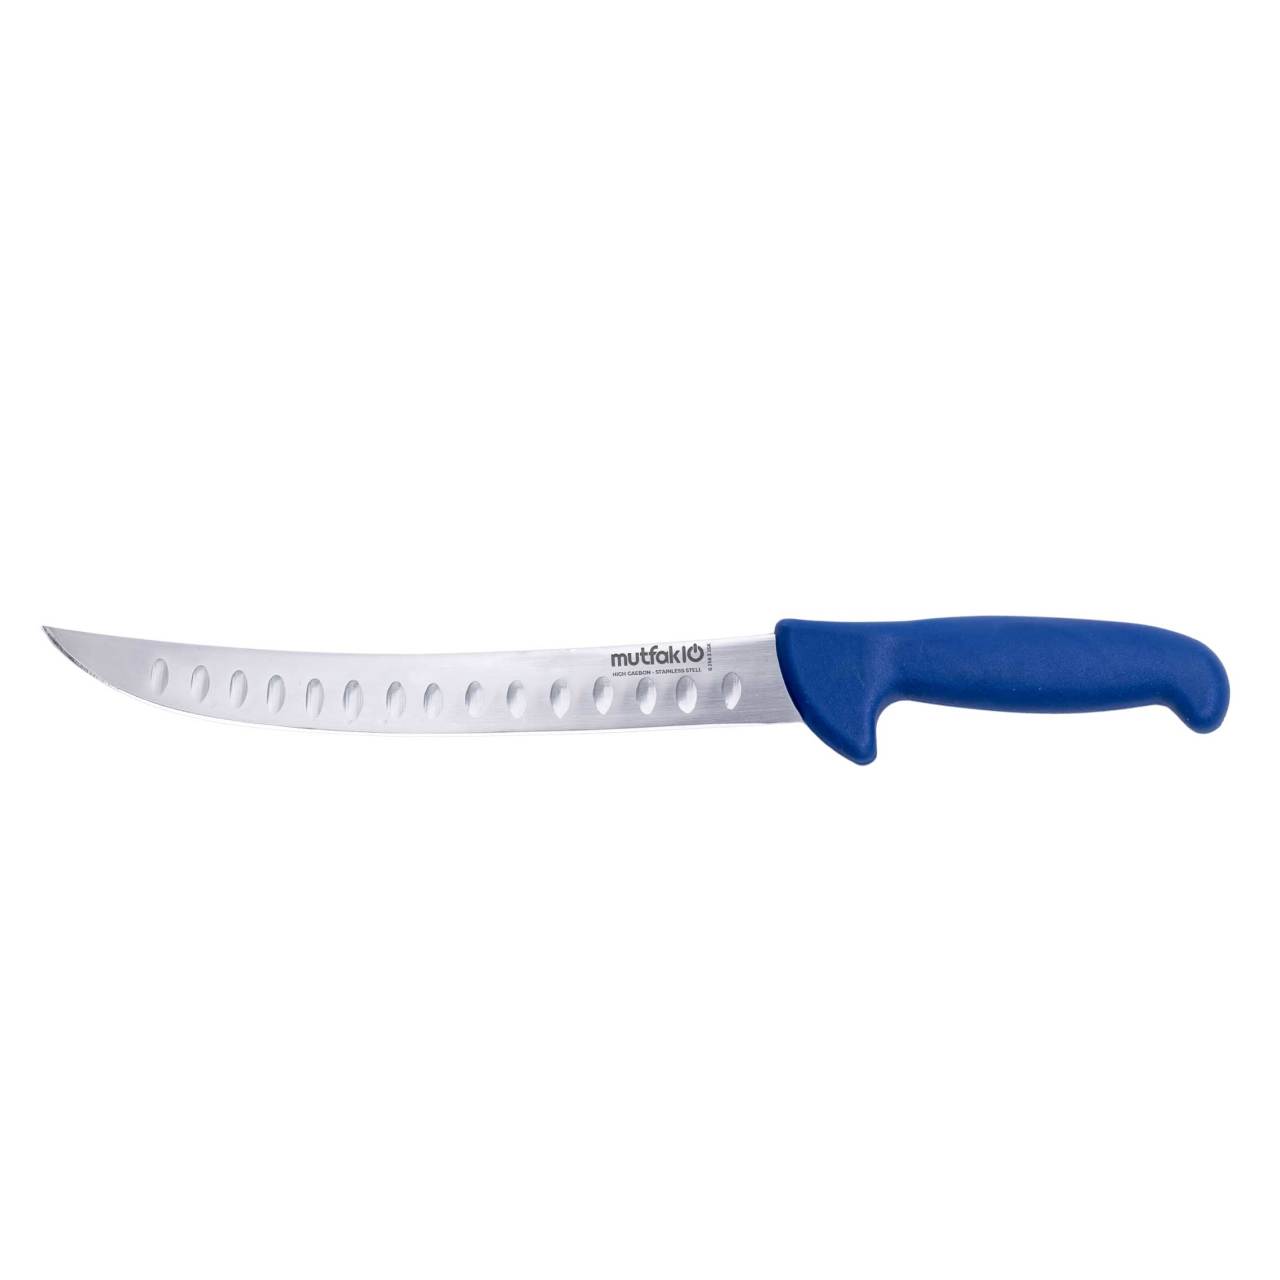 Mutfak10 Oluklu Trimleme Bıçağı 25 Cm